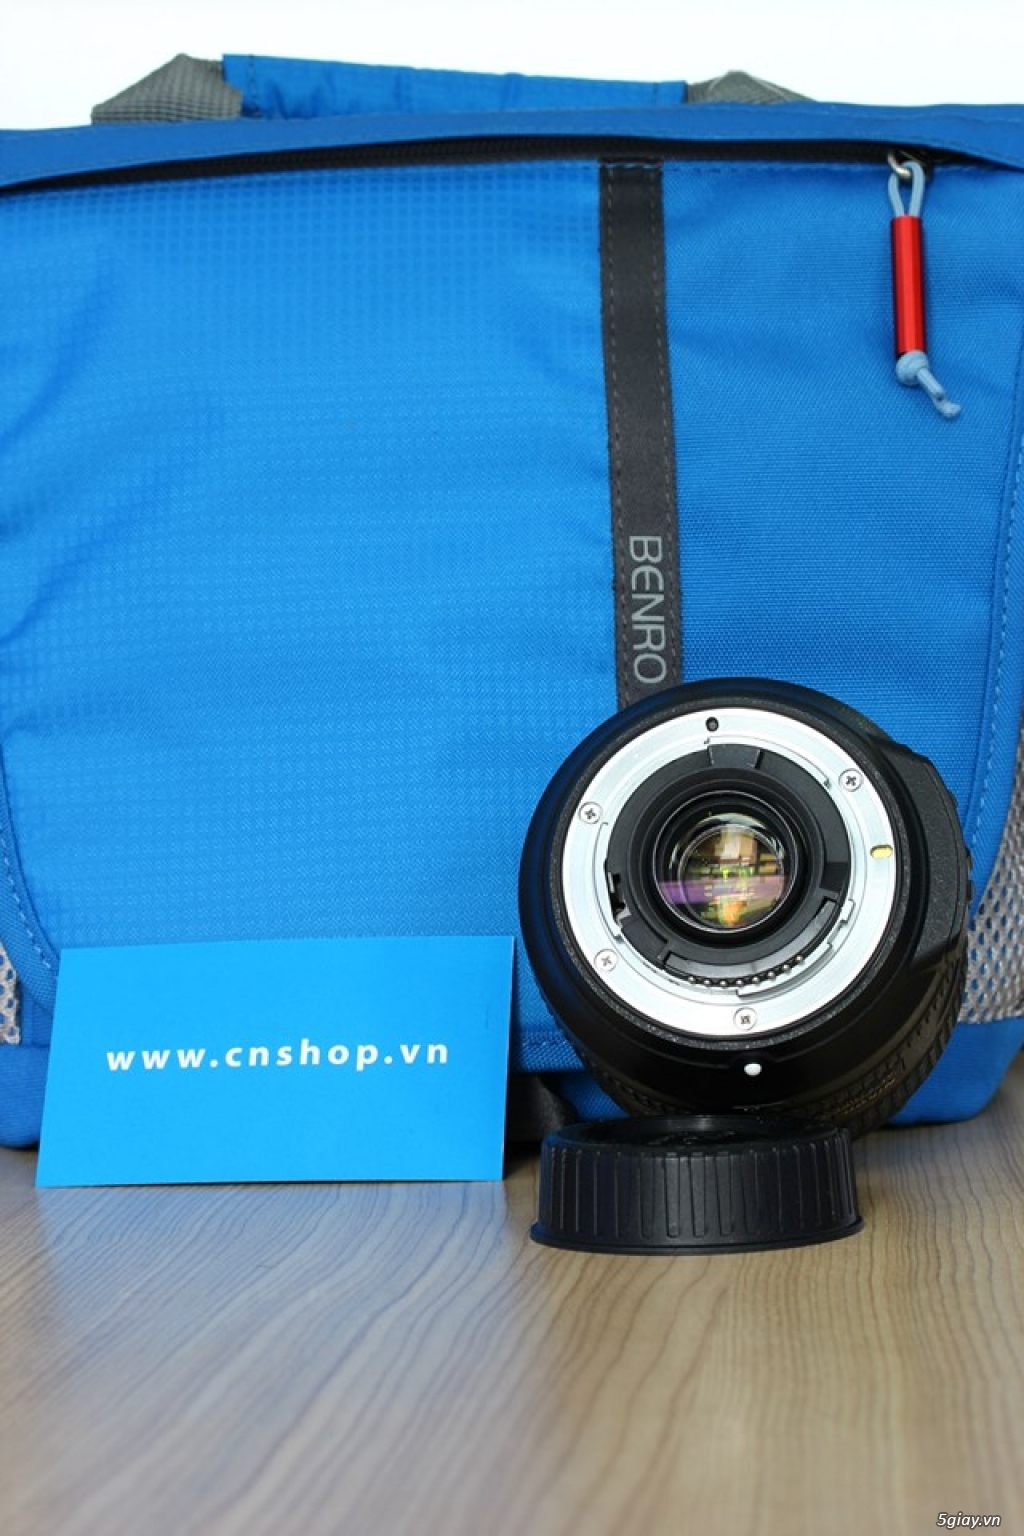 Cần bán Nikon AF-S 24-85mm f/3.5-4.5G ED VR tại cnshop.vn - 2